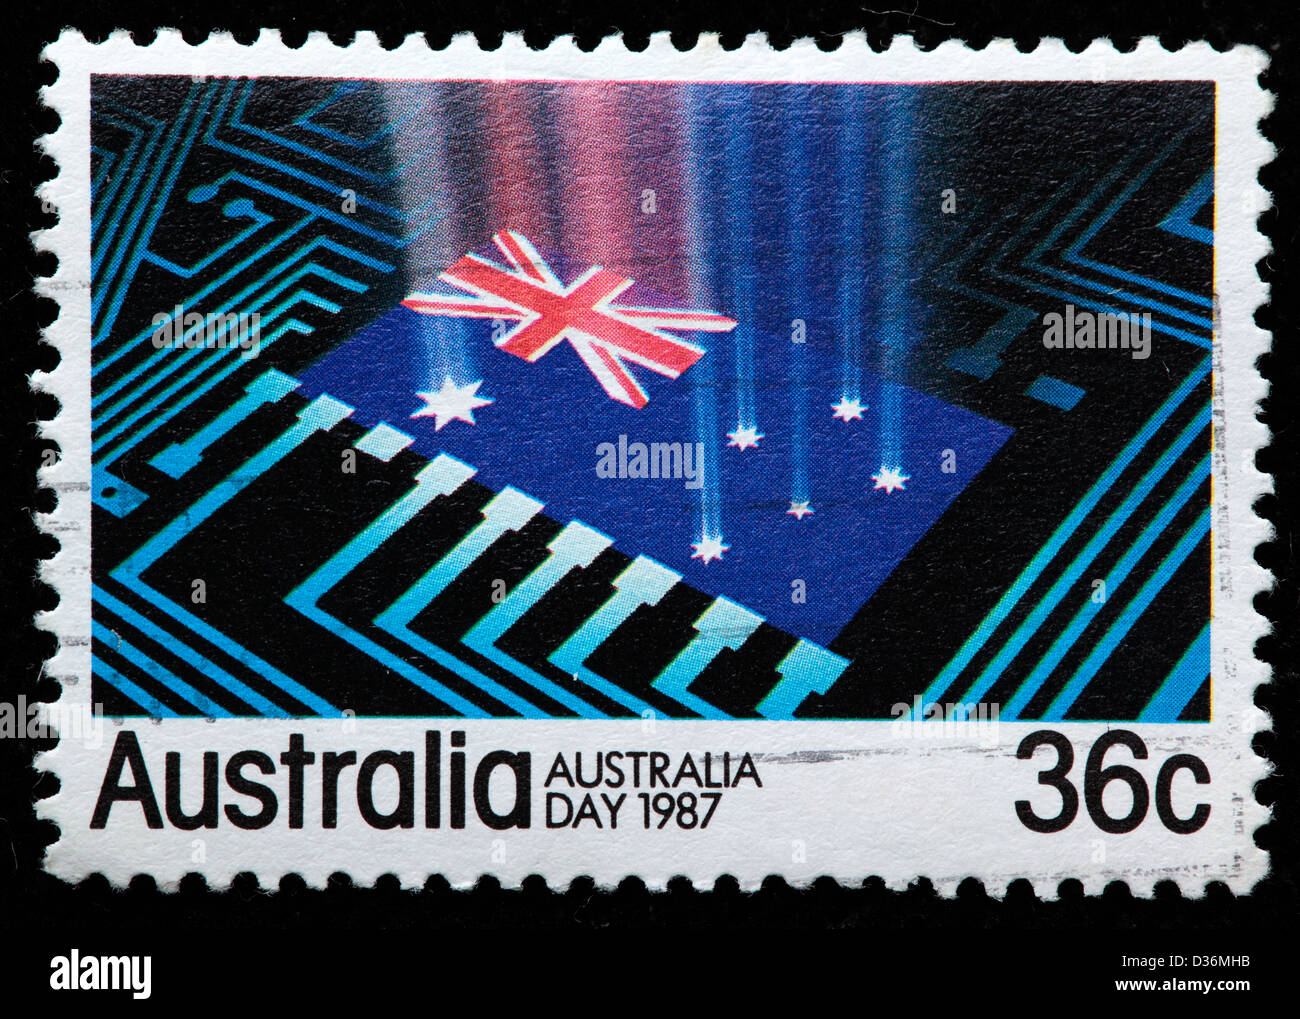 Australia day, postage stamp, Australia, 1987 Stock Photo